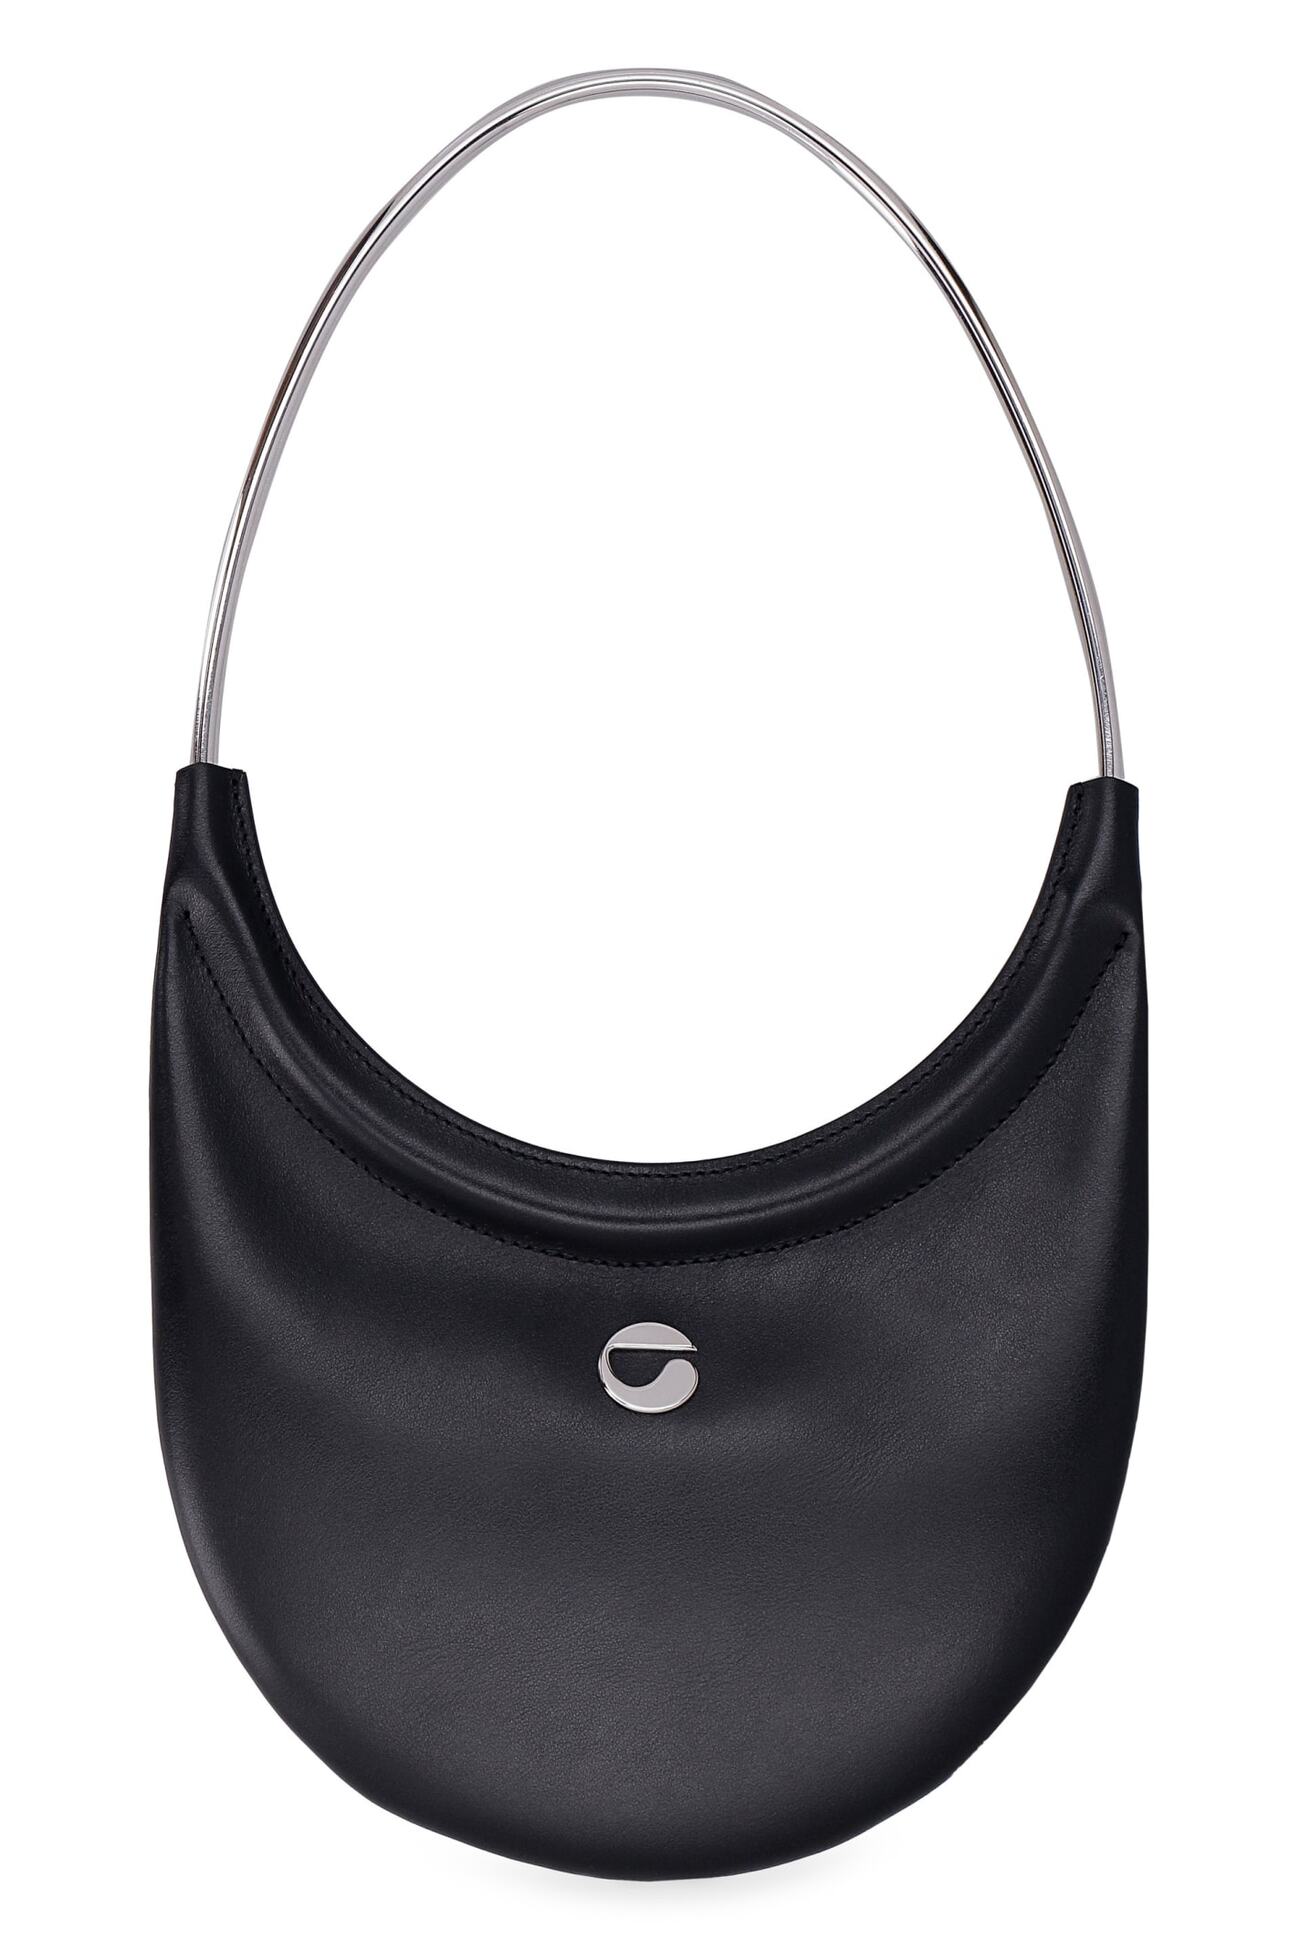 Coperni Ring Swipe Leather Bag in black